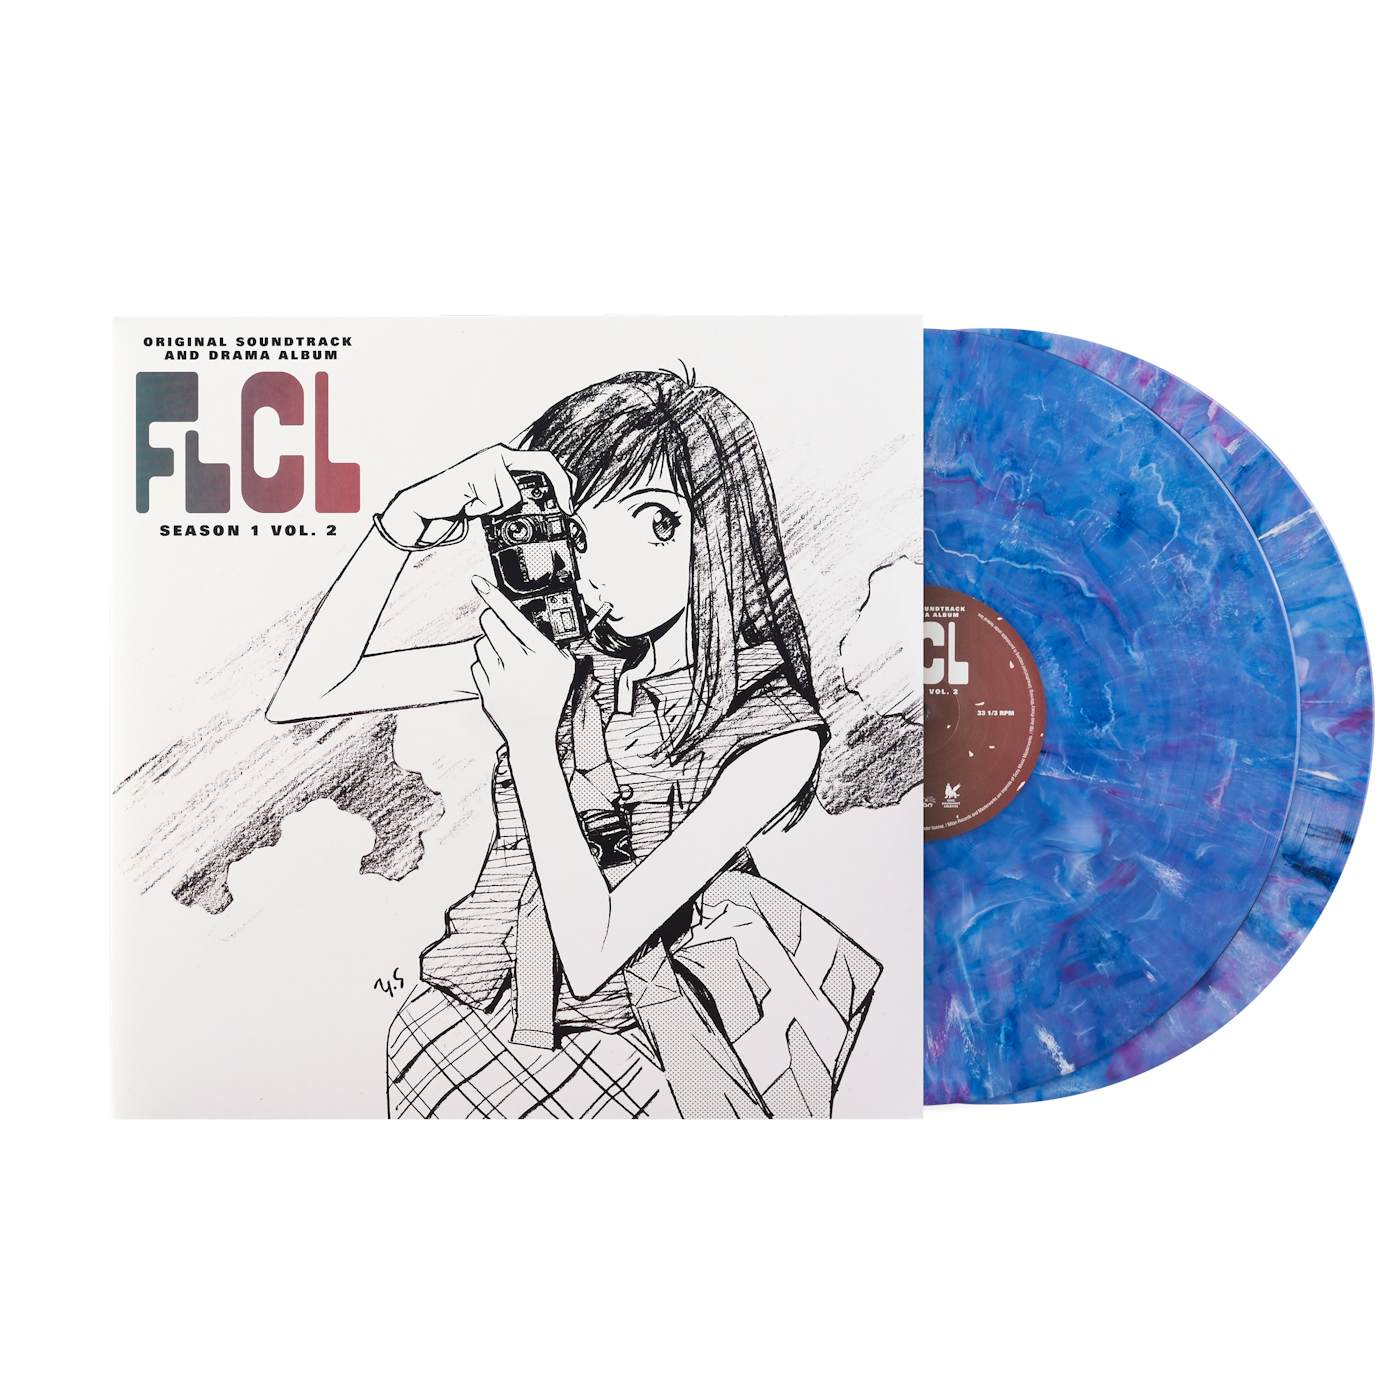 FLCL Season 1 Vol. 2 (Original Soundtrack and Drama Album) - The